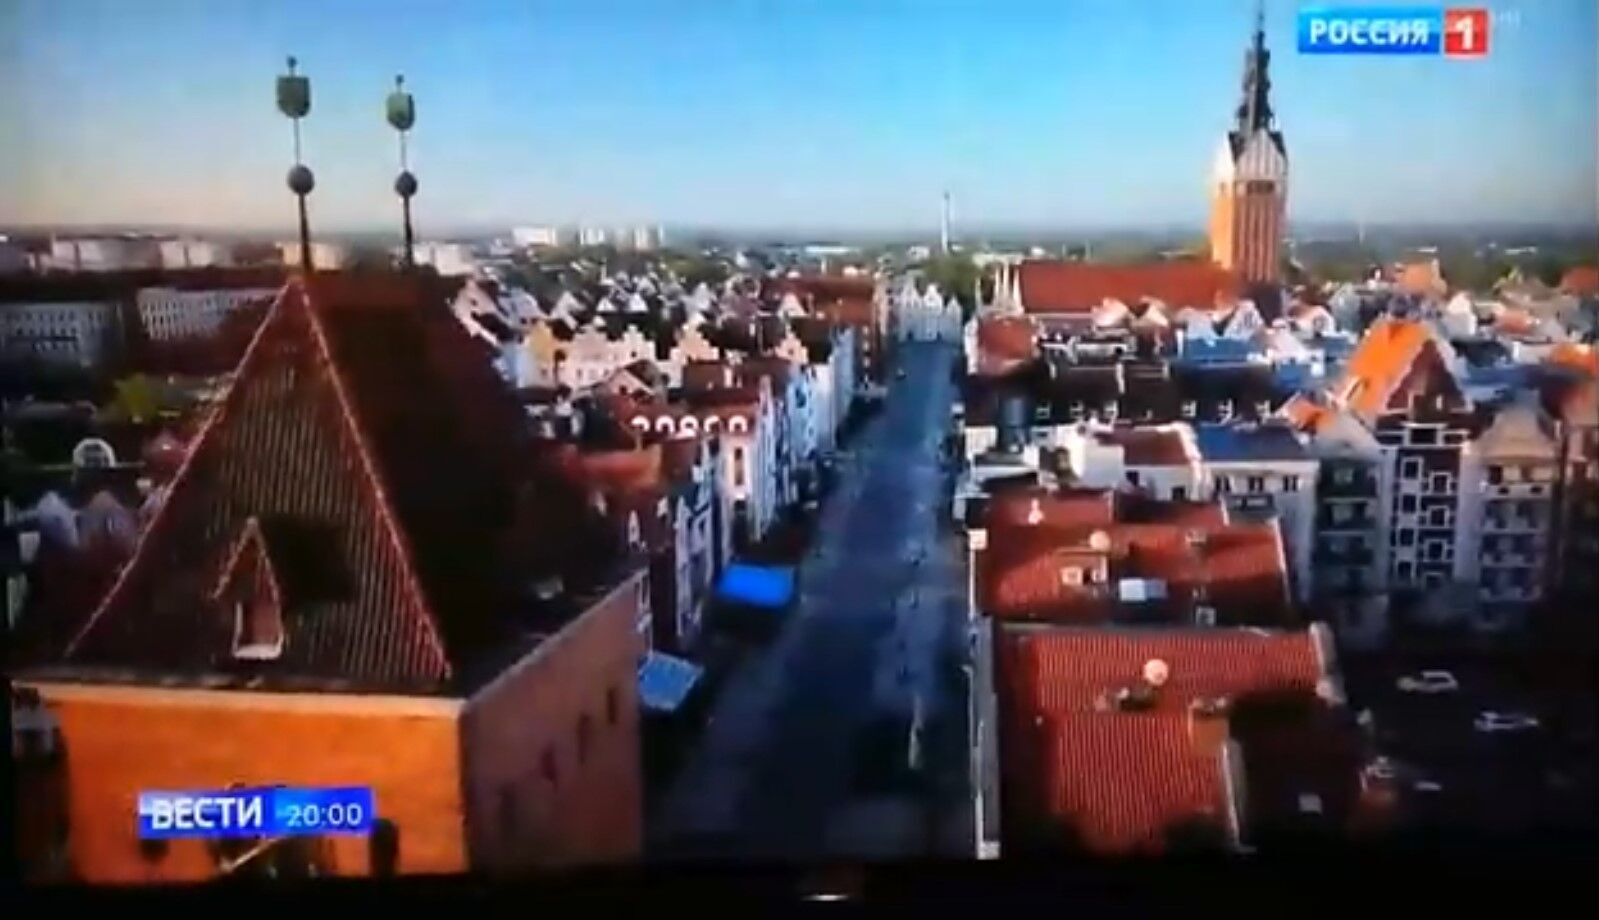 Пропагандисти Путіна похвалилися відео "квітучого Калінінграда", але оконфузились: на кадрах була Польща. Відео